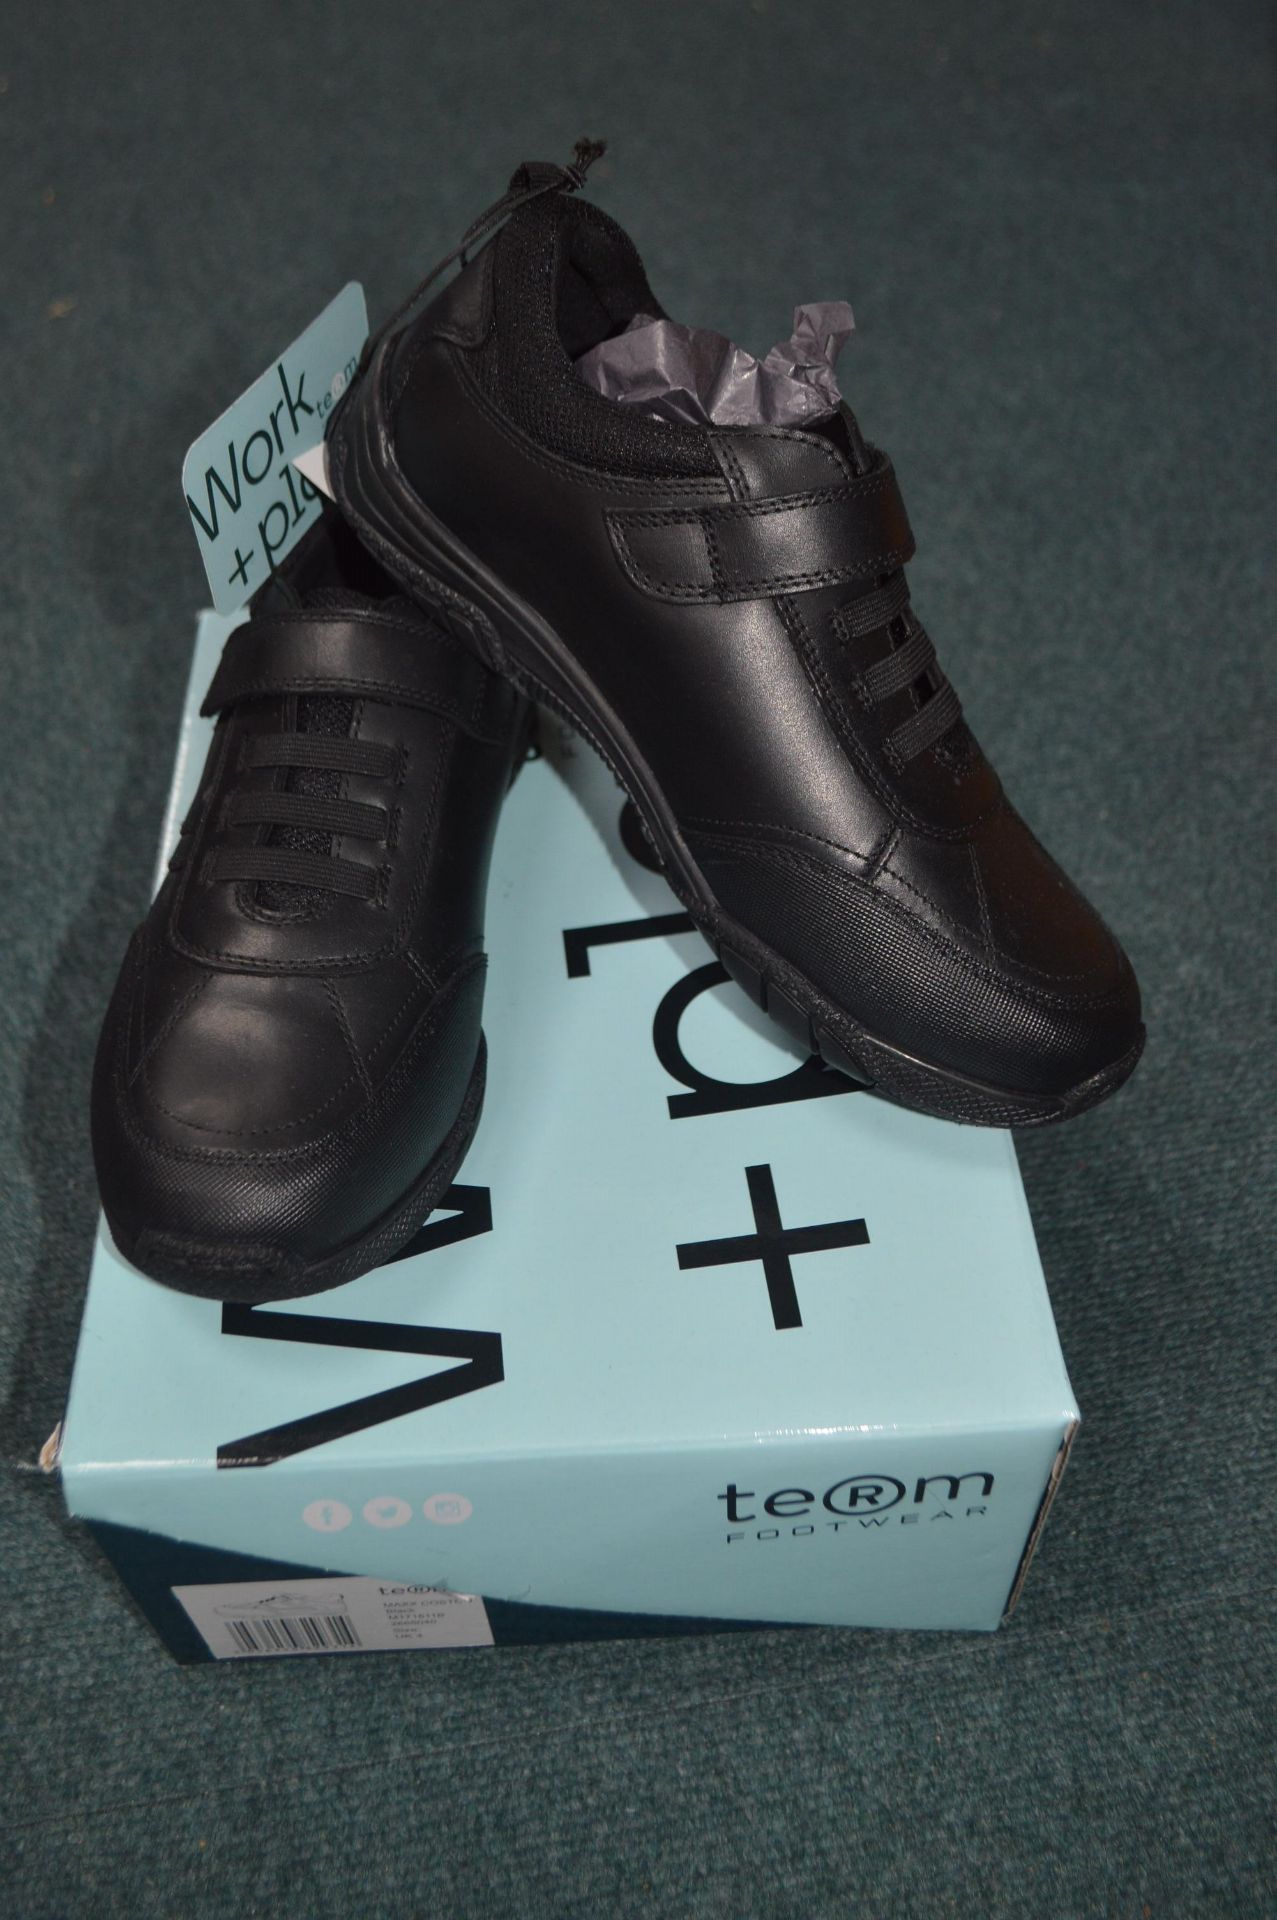 Term Children’s Black School Shoes Size: 4